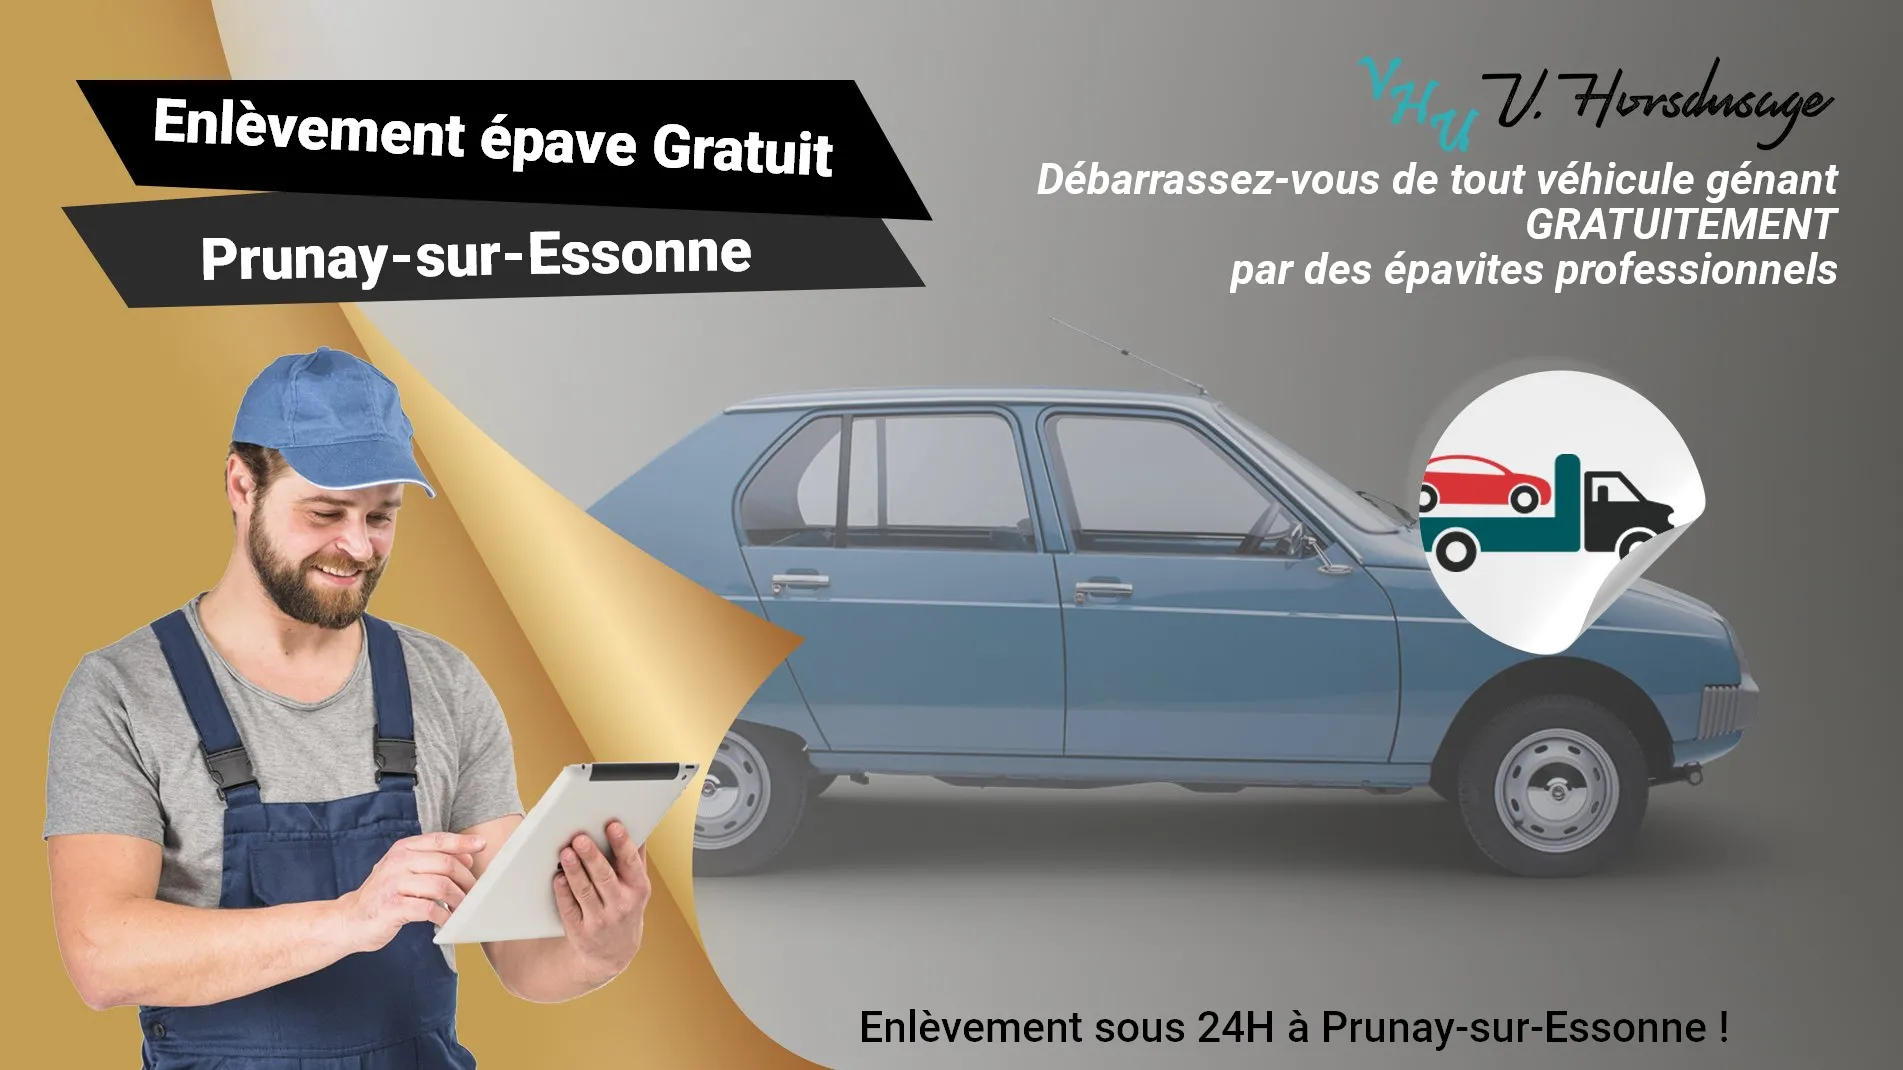 Pour un enlèvement gratuit à Prunay-sur-Essonne, contactez nos épavistes agréé VHU